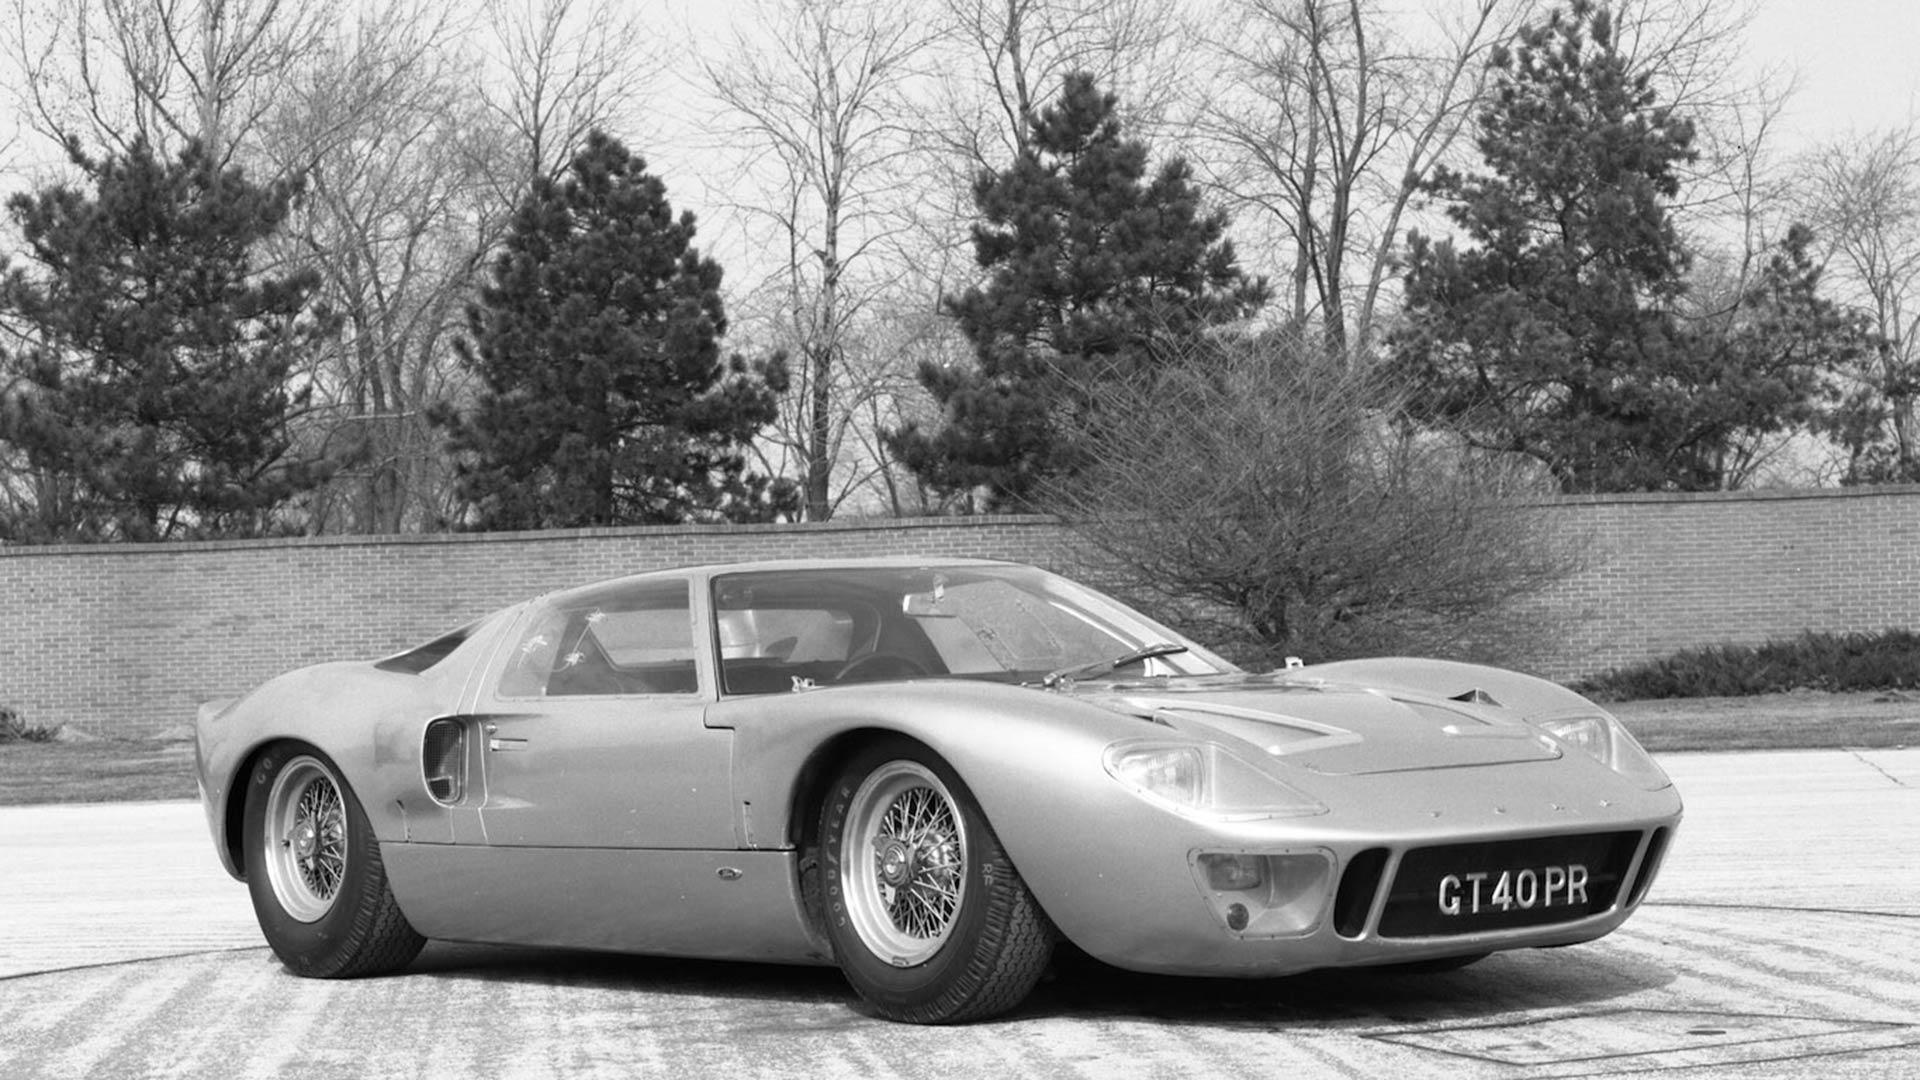 Ford versus Ferrari at Le Mans 1966